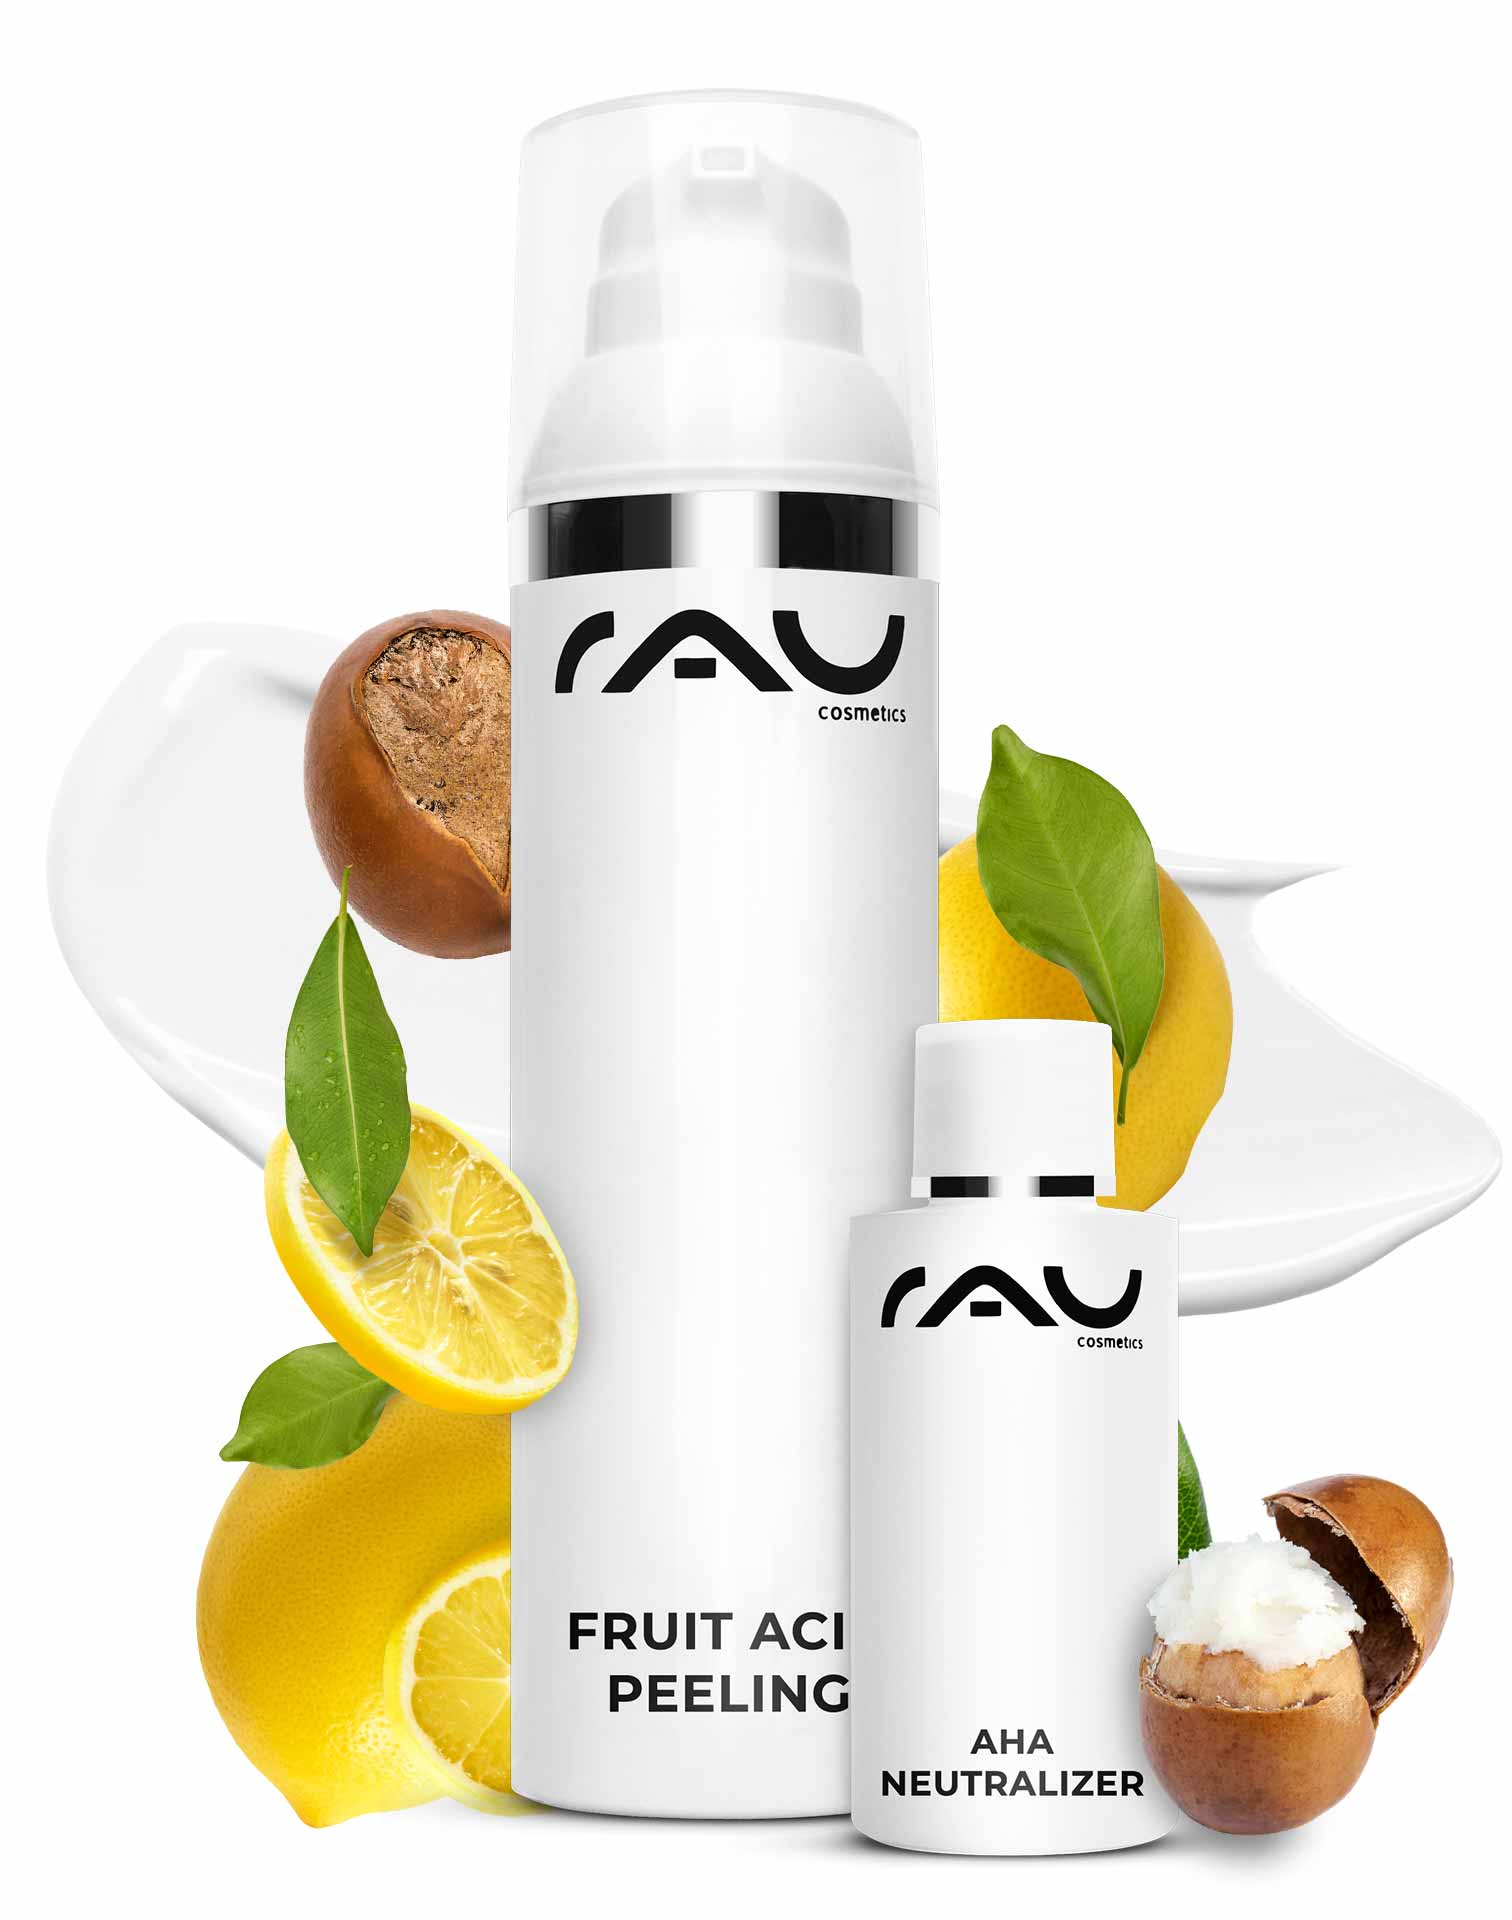 RAU Fruit Acid Peeling 100 ml - Peeling with BHA